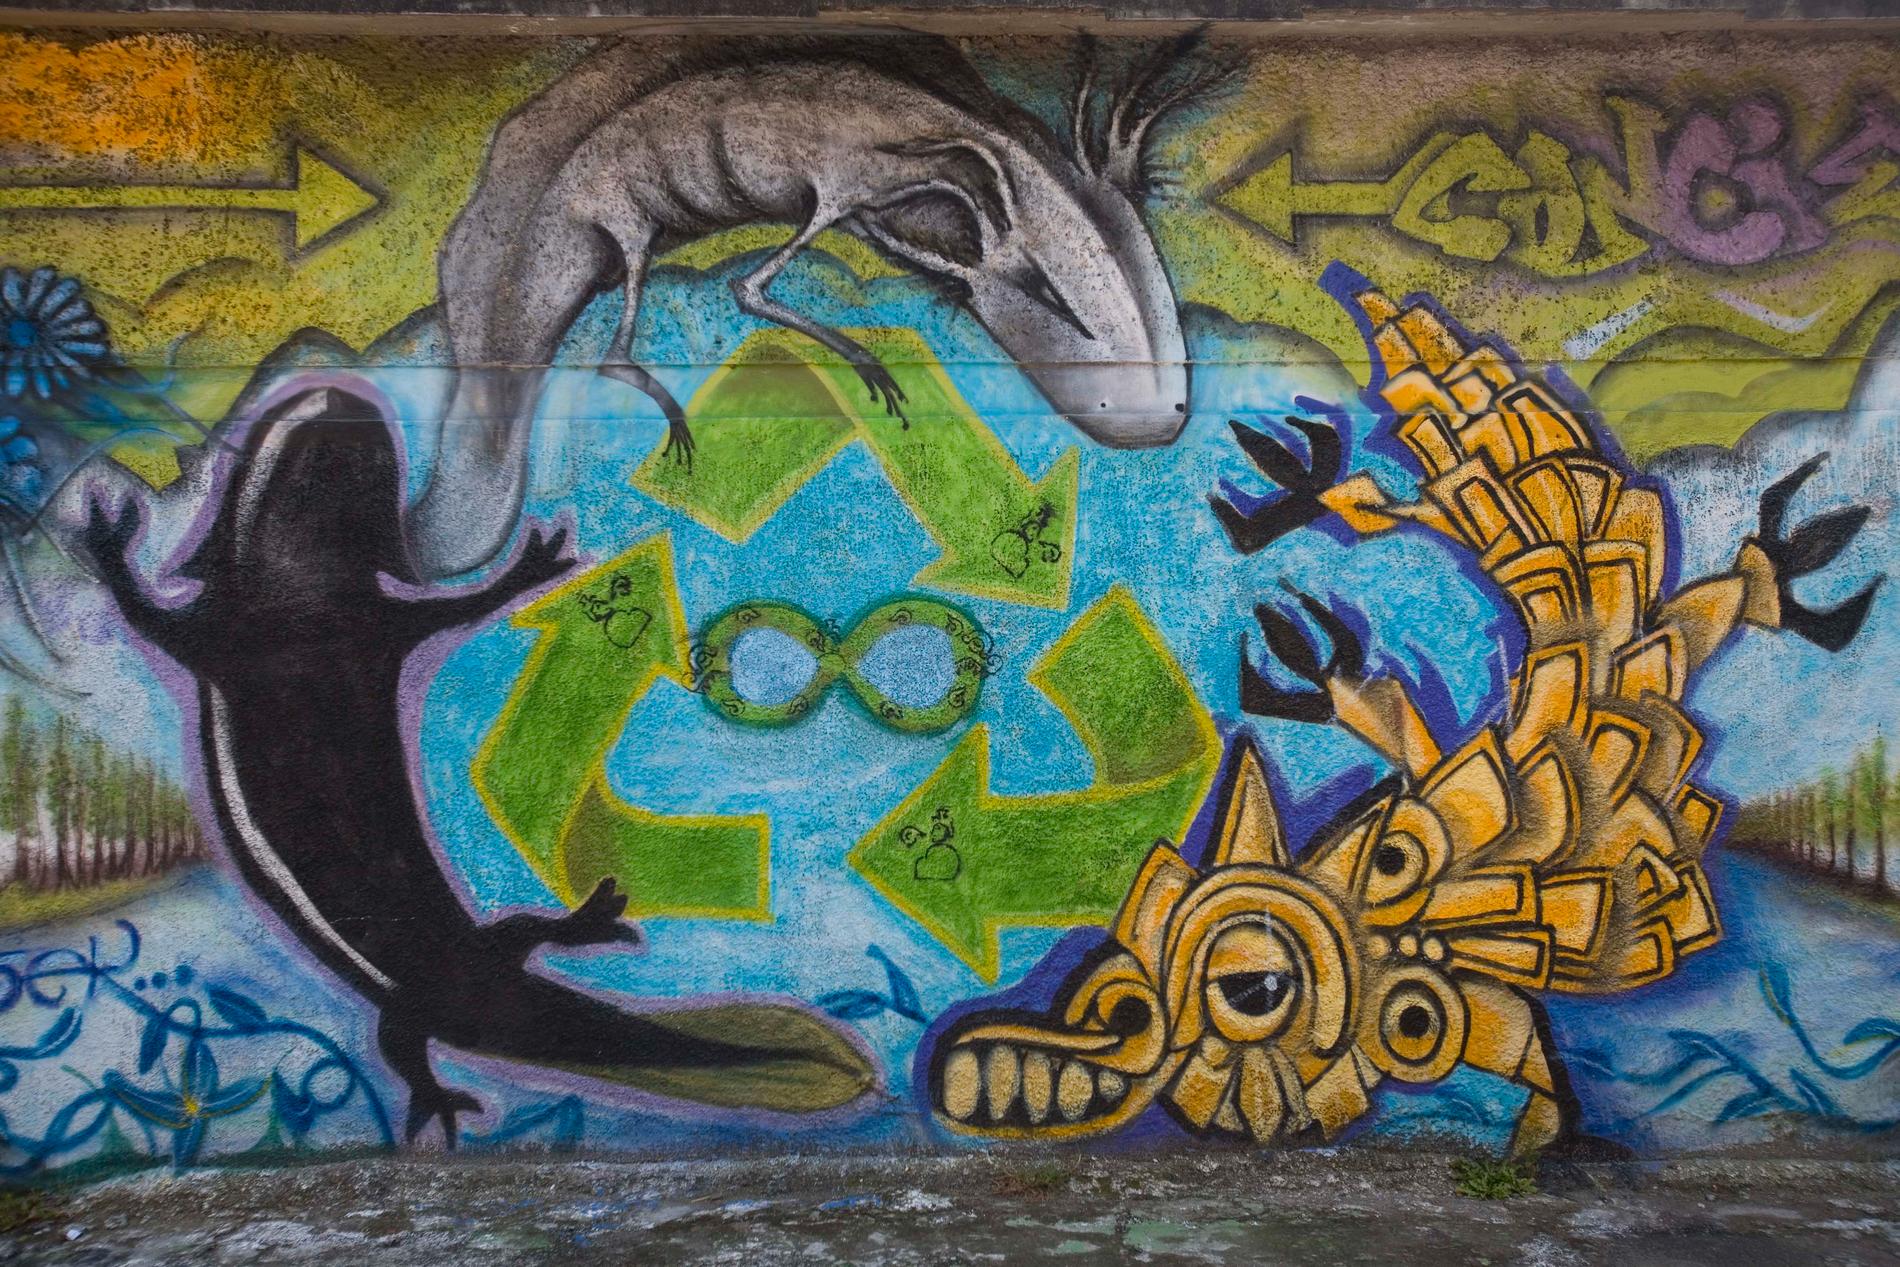 Axolotlar har blivit en nationalsymbol för Mexiko. Här en graffitimålning från Mexico City. Arkivbild.